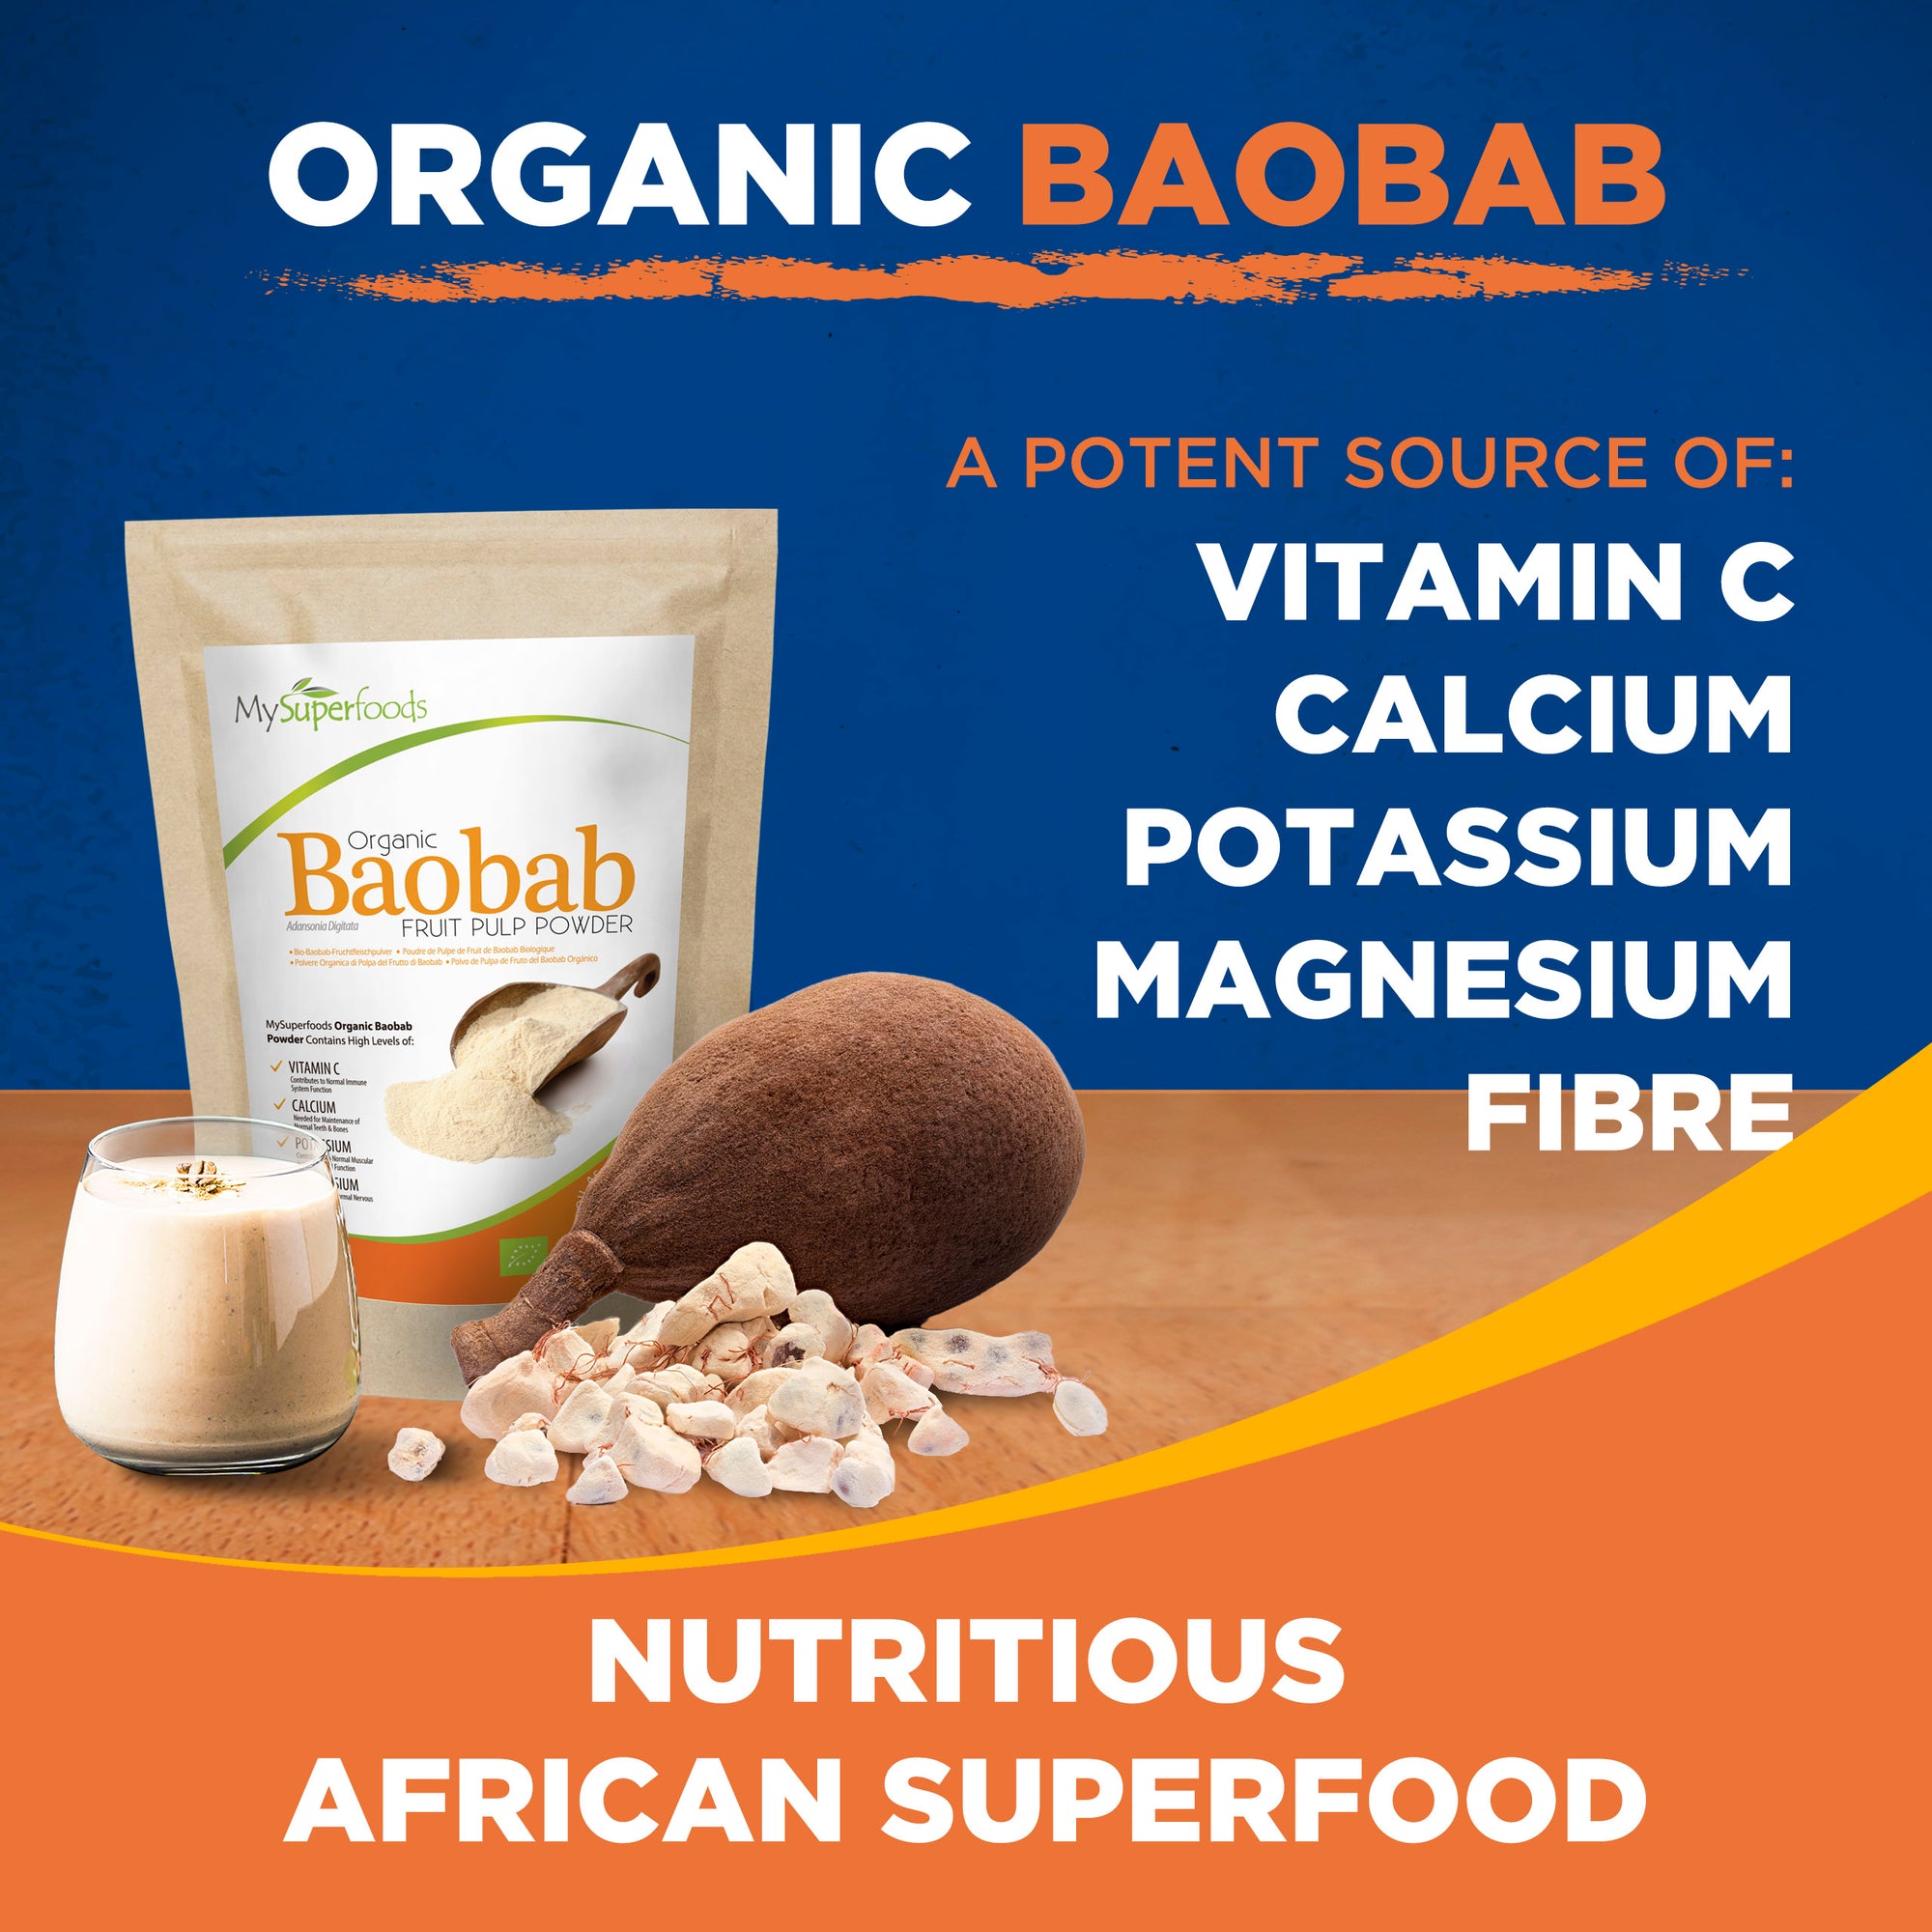 Poudre de Baobab Bio 500G, Qualité Supérieure